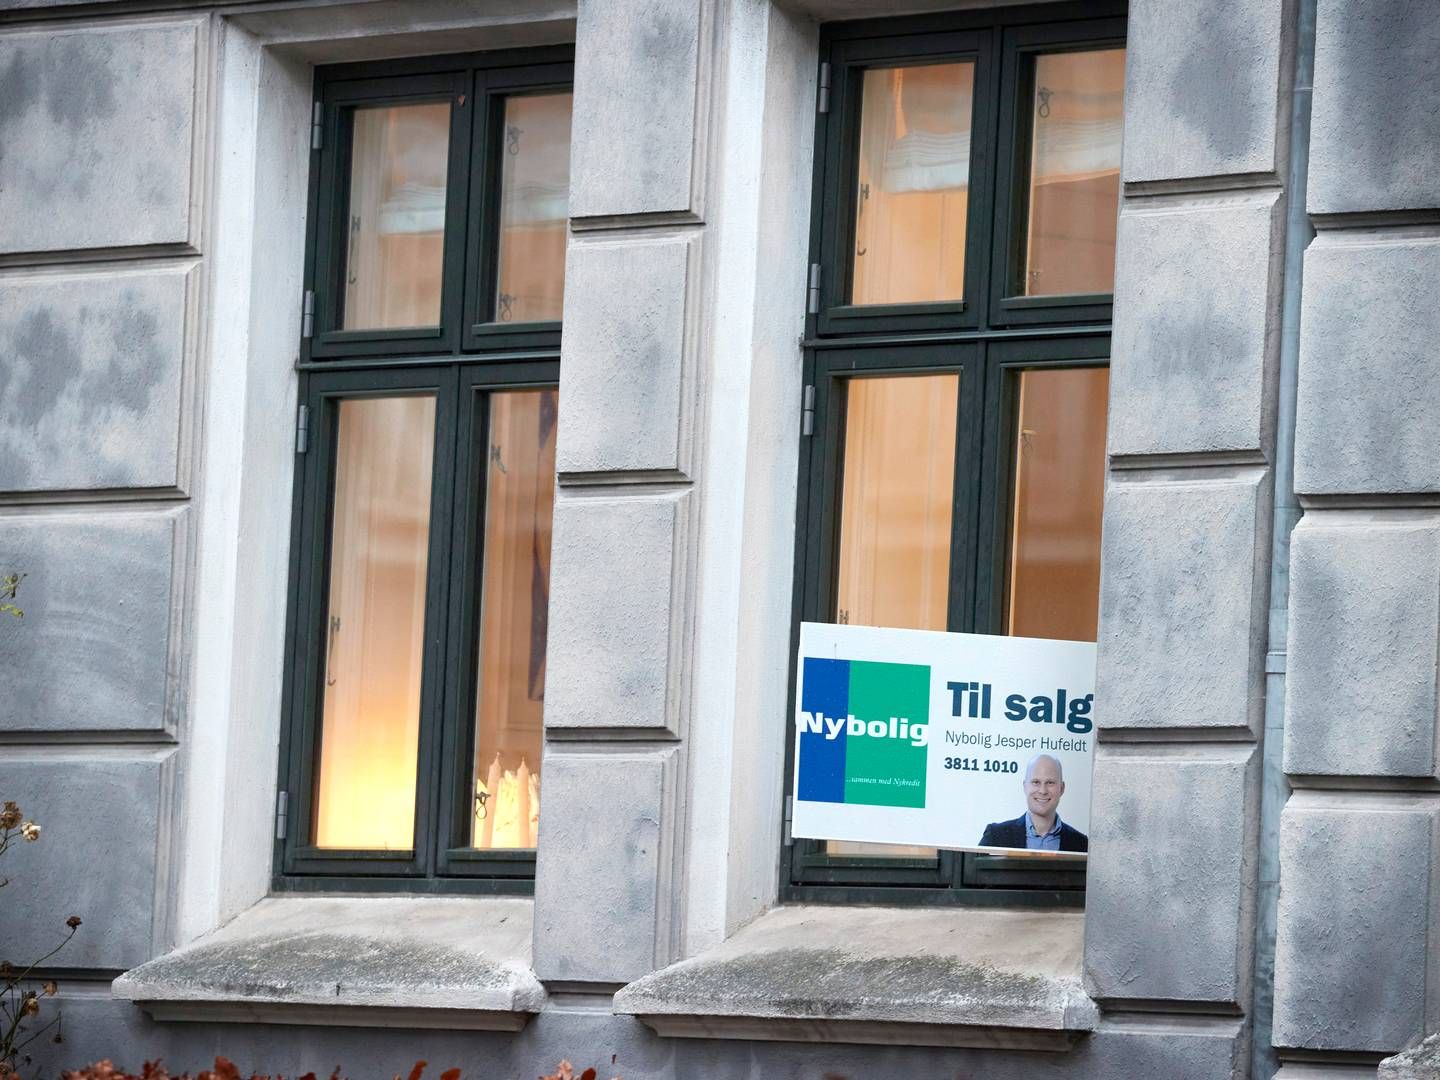 Særligt salget af ejerlejligheder er gået op. | Foto: Jens Dresling/Ritzau Scanpix